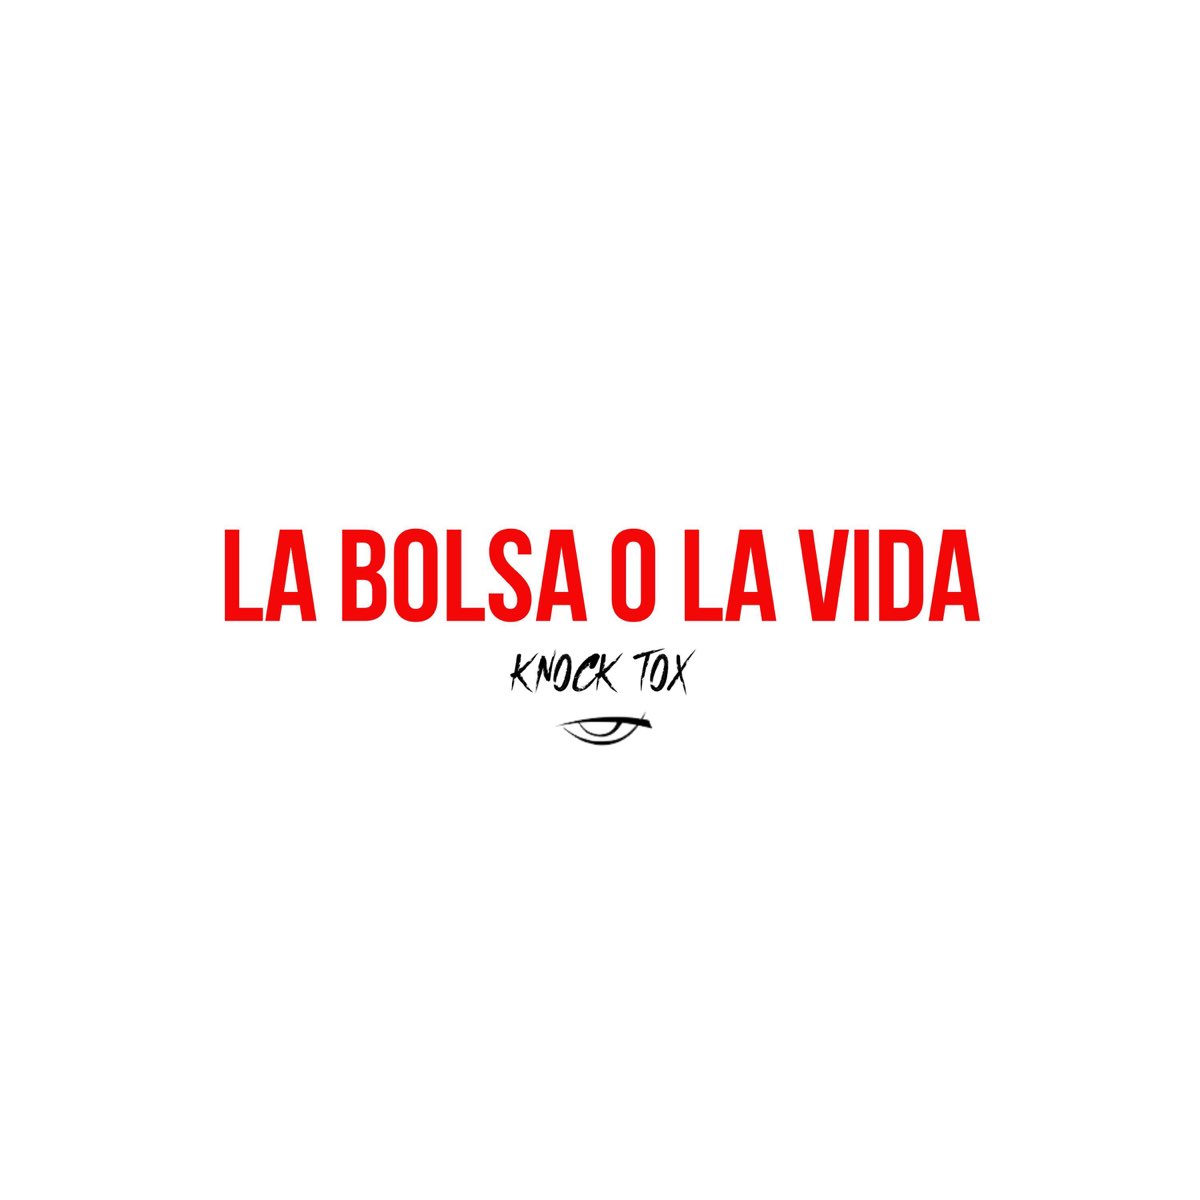 La Bolsa O La Vida - Single” álbum de Knock Tox en Apple Music